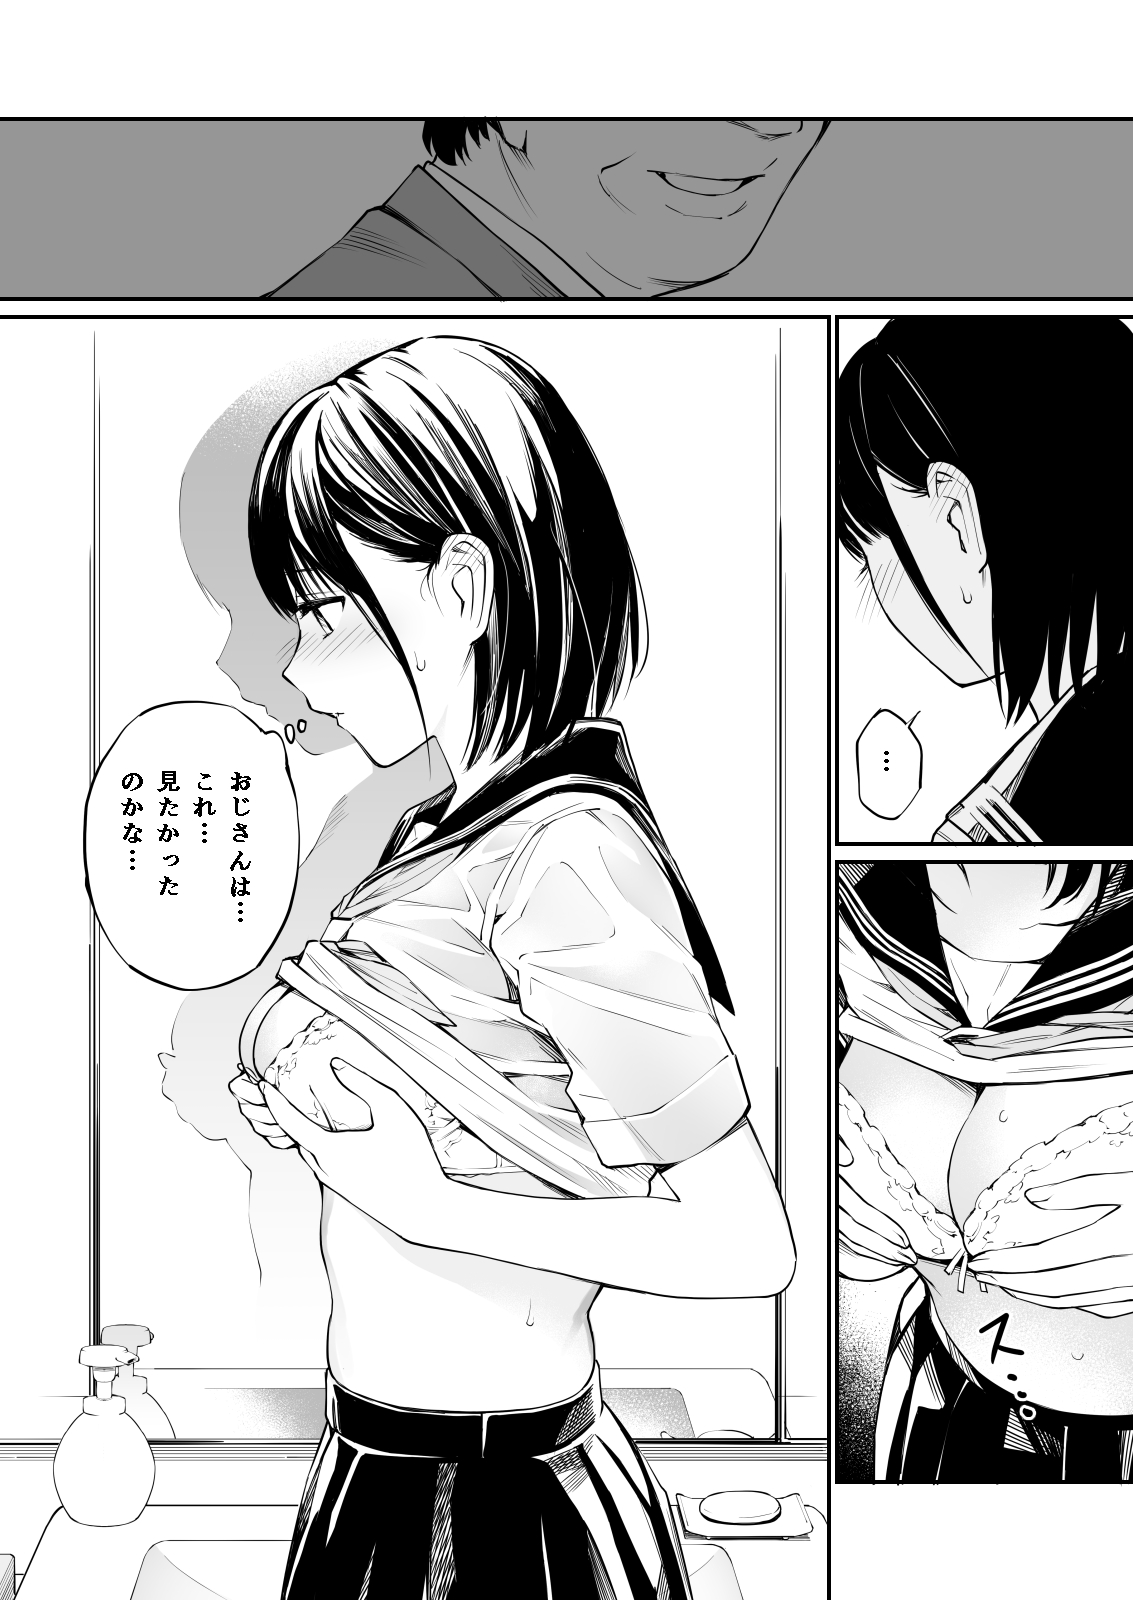 【エロ漫画無料大全集】【エロ漫画JK】濡れた制服に視線が向けられる…自分の恥ずかしい姿を見られたいと感じた女の子の行動が…